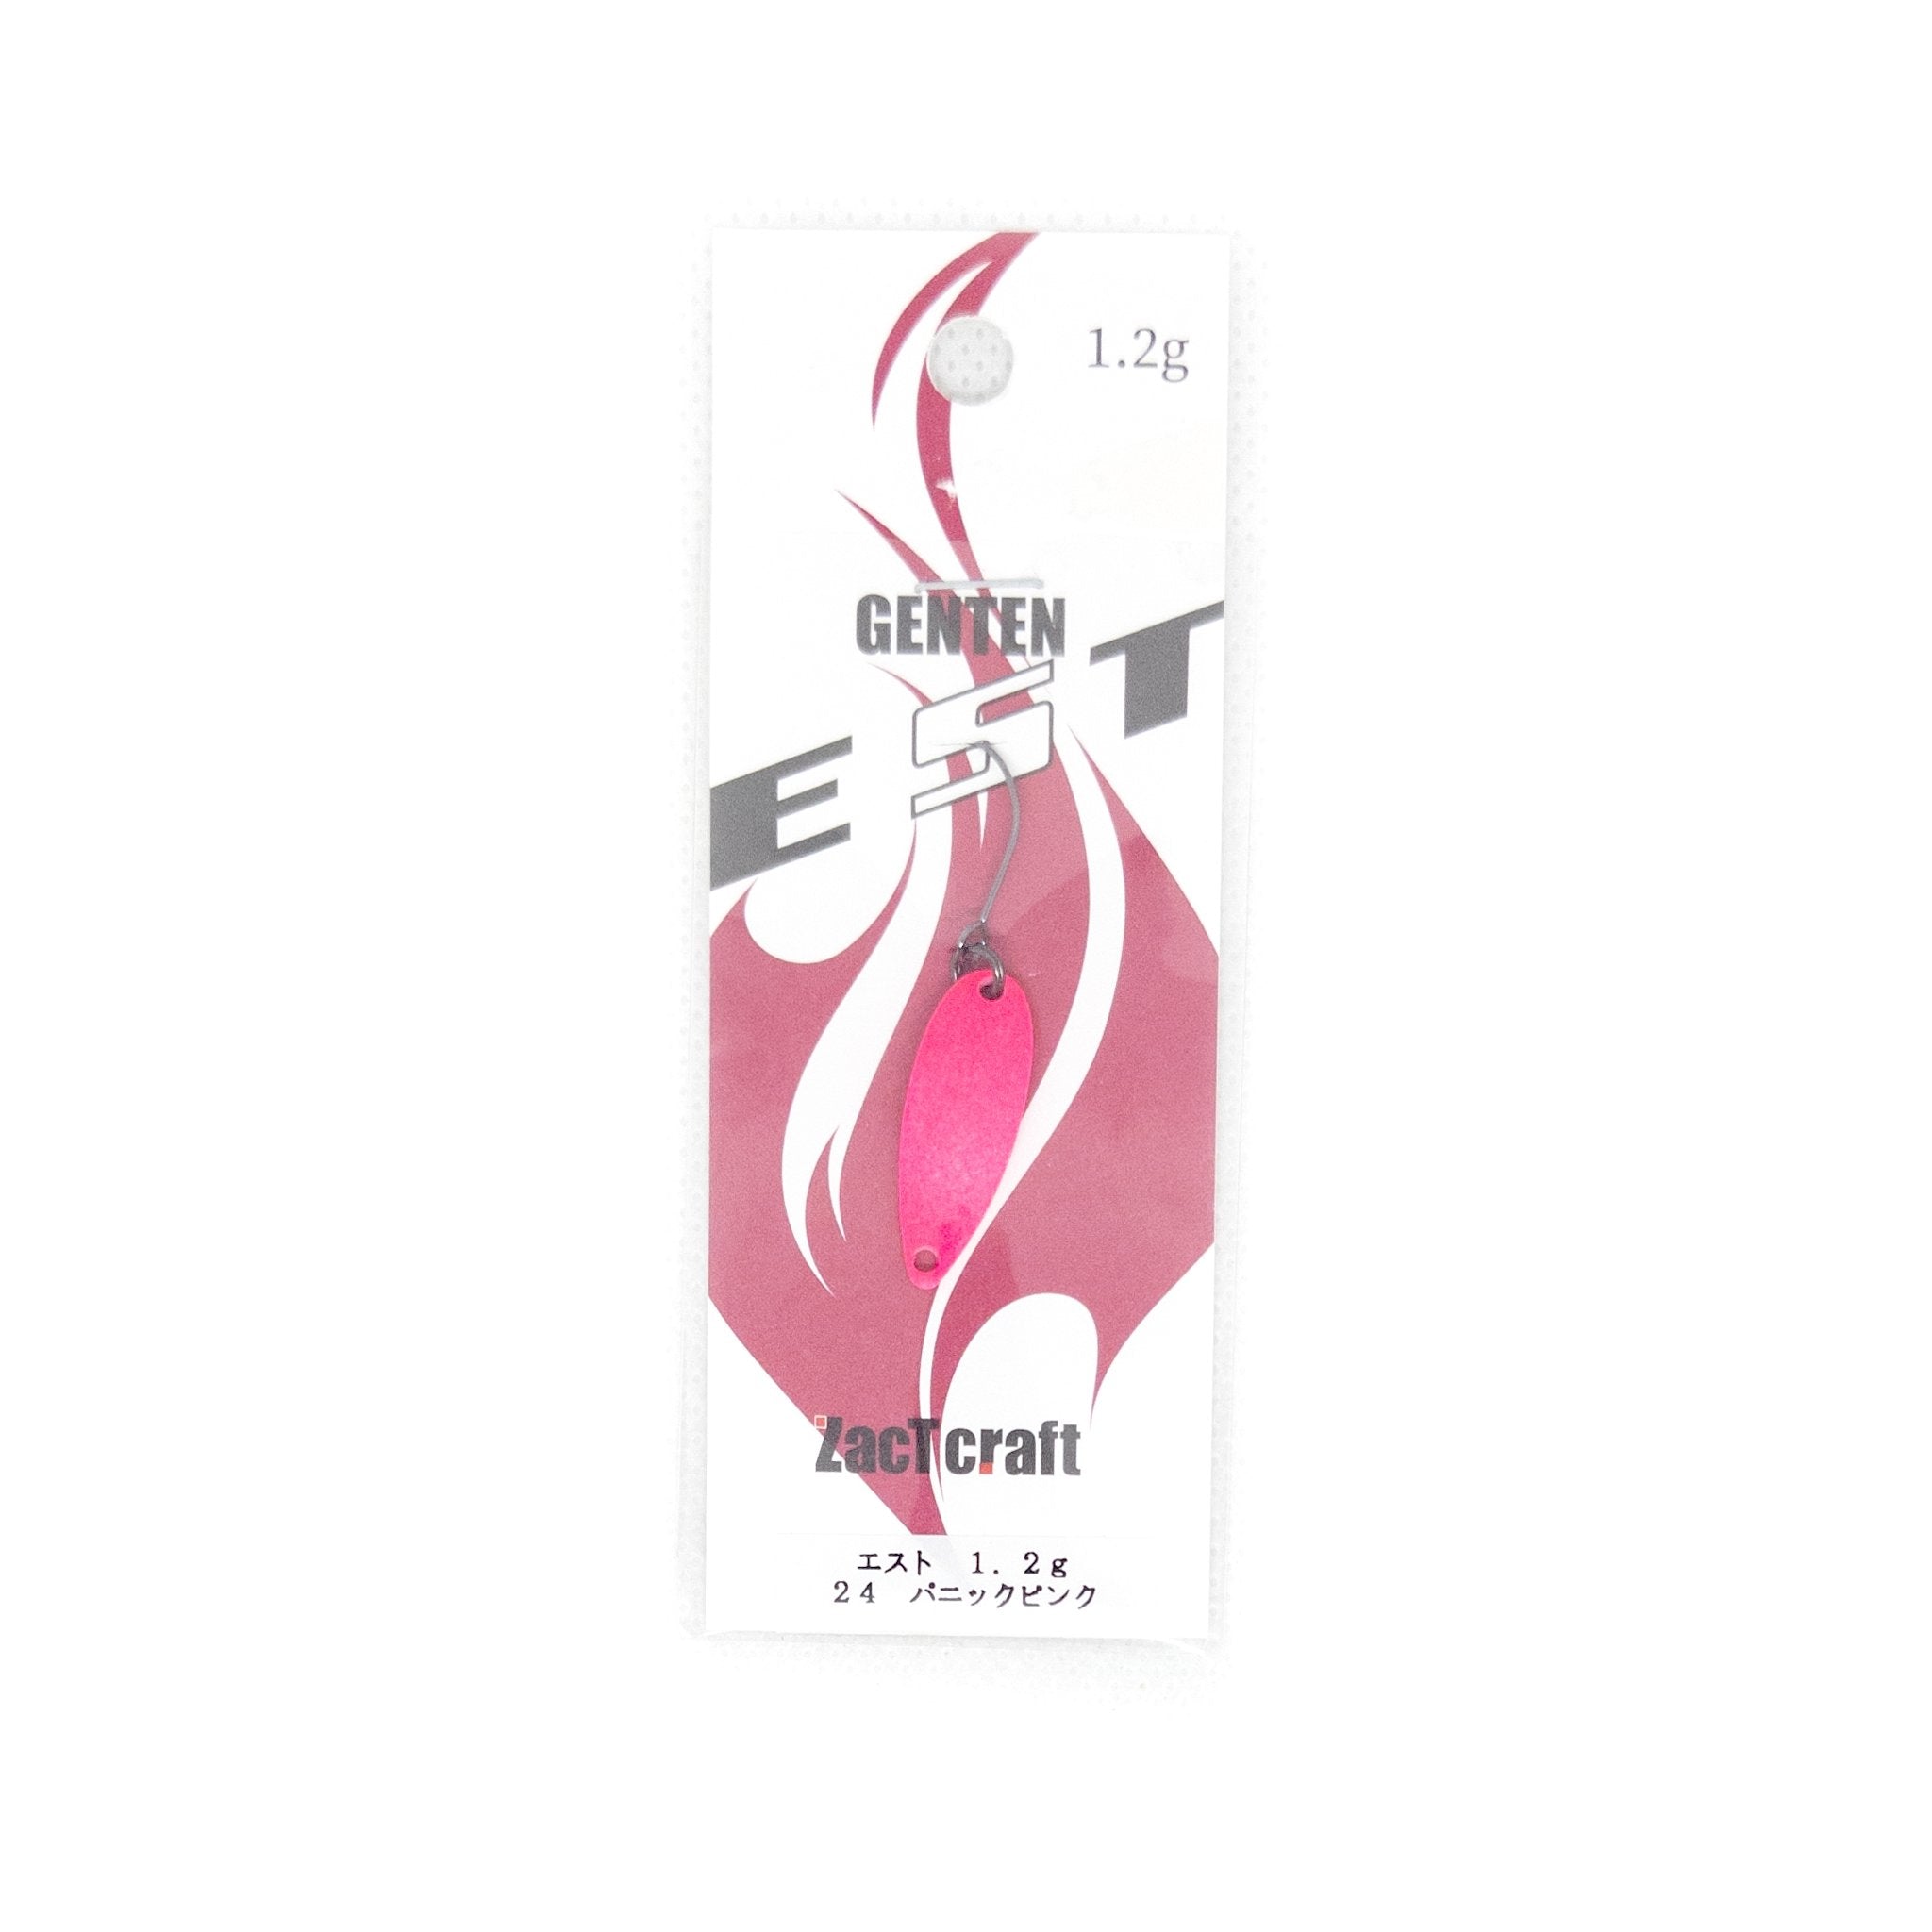 ZactCraft GENTEN EST 1.2g Trout Spoon Color "#24 Panic Pink" - The Borrowed Lure